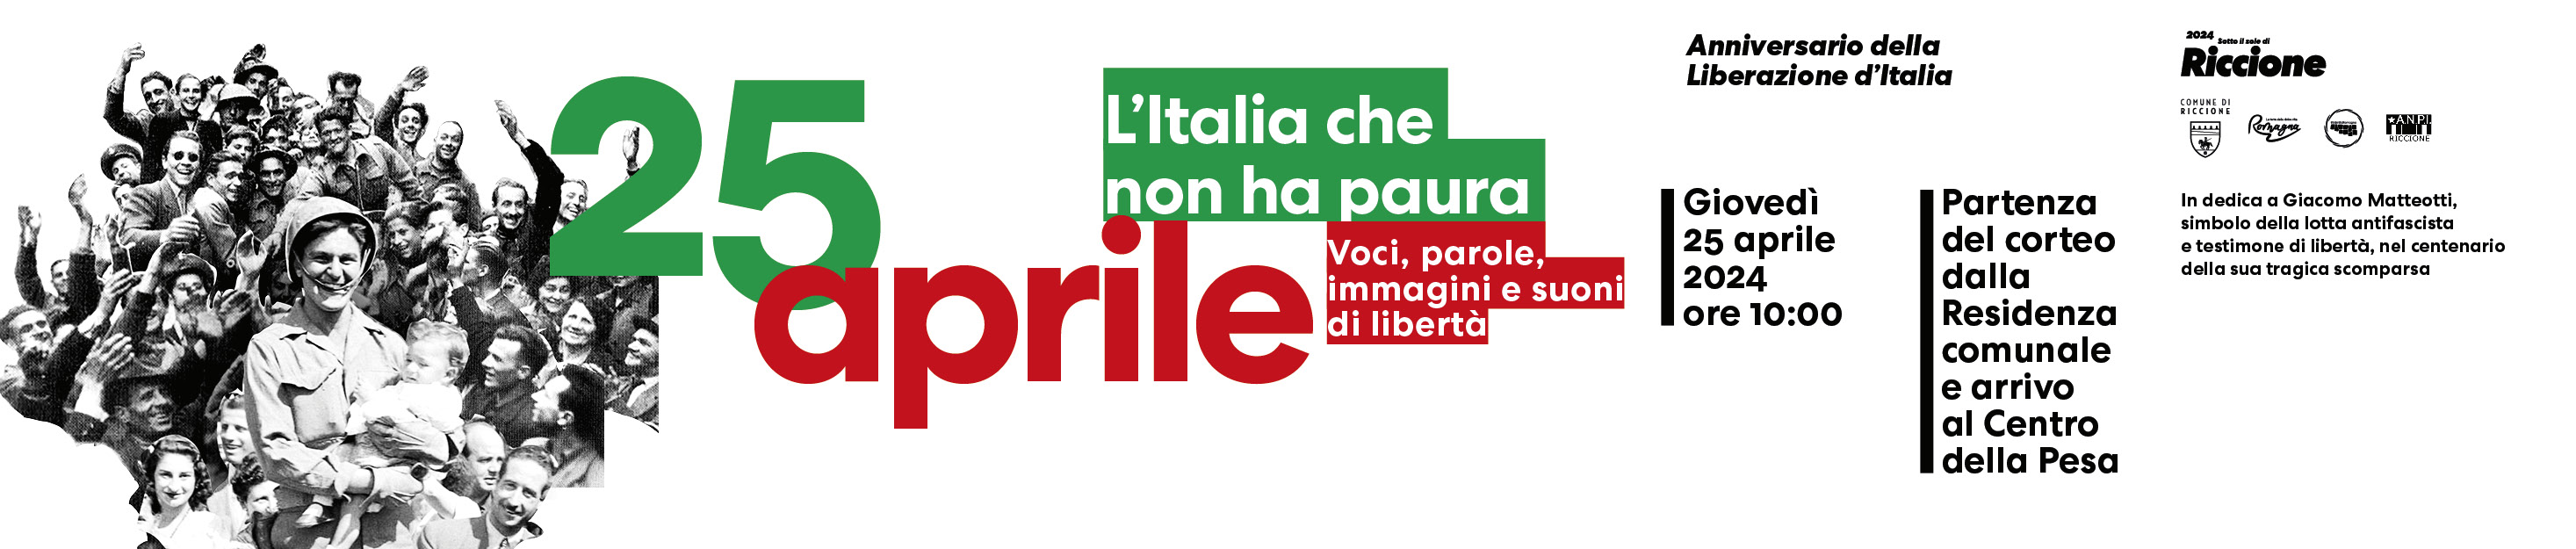 25 aprile, l'Italia che non ha paura Riccione celebra la festa della Liberazione: poster art, corteo istituzionale, conferenza scenica con Ezio Mauro